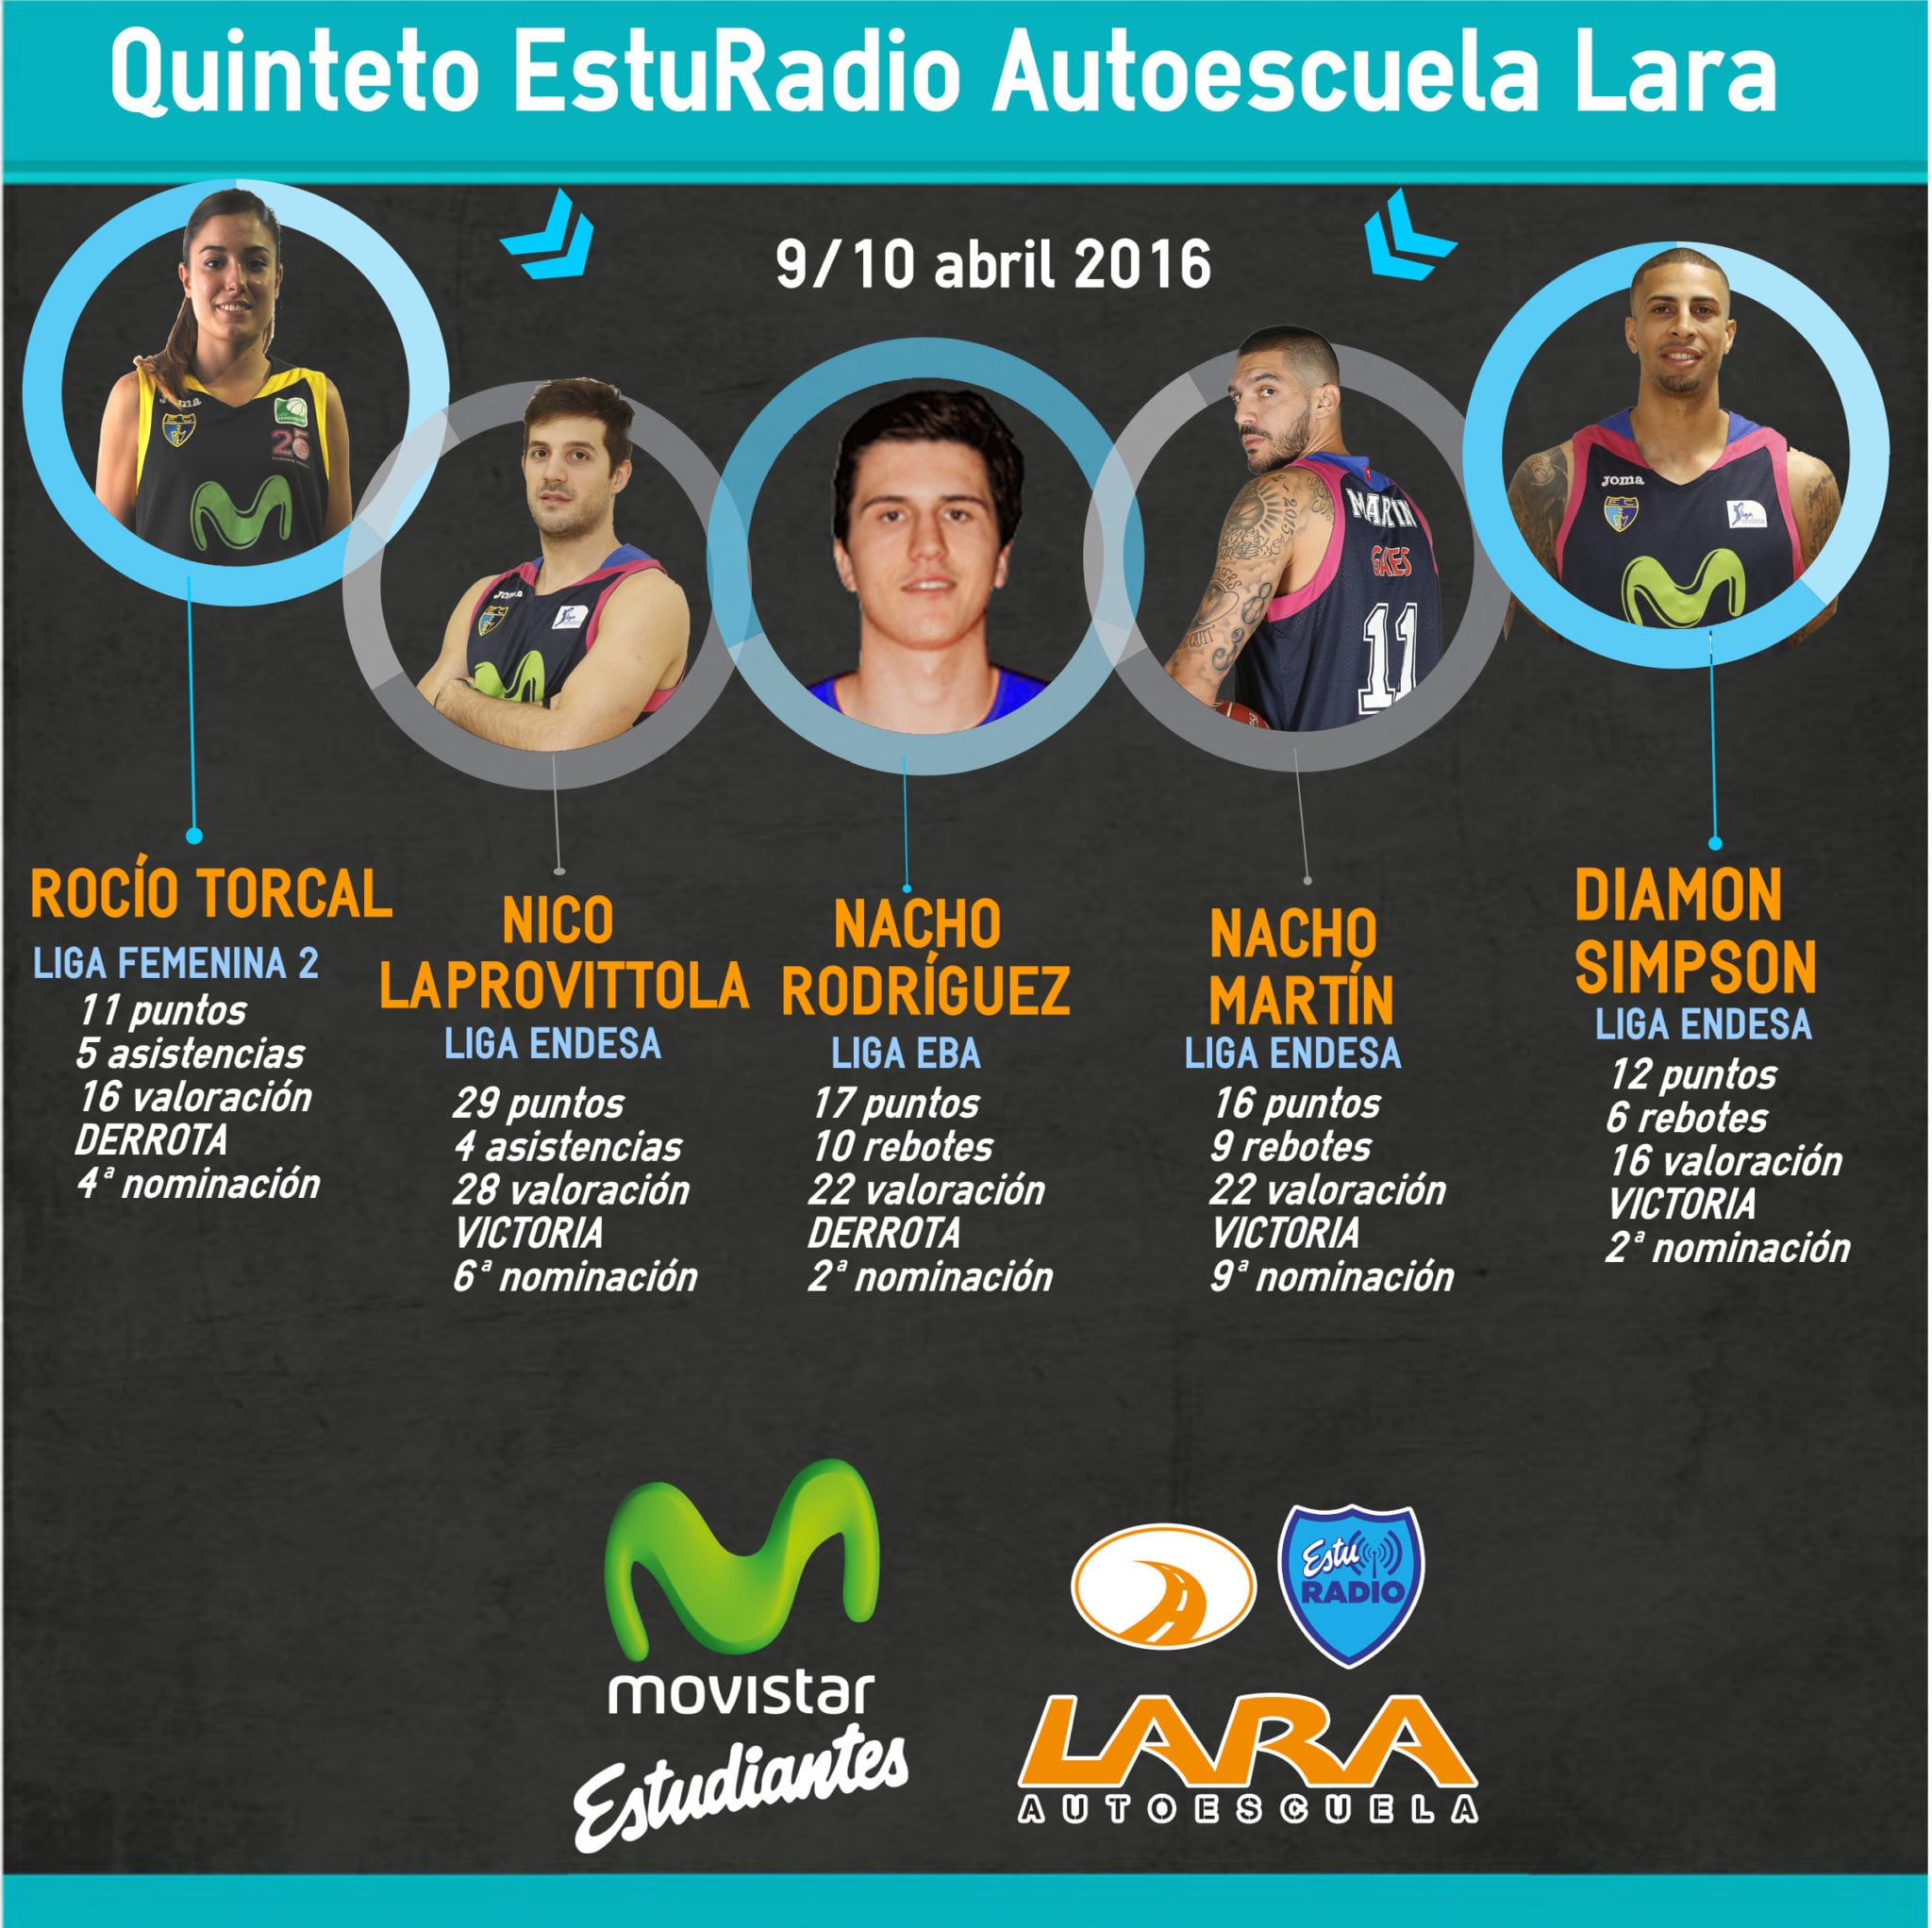 Quinteto EstuRadio Autoescuela Lara: Rocío Torcal, Nico Laprovittola, Nacho Rodríguez, Nacho Martín y Diamon Simpson